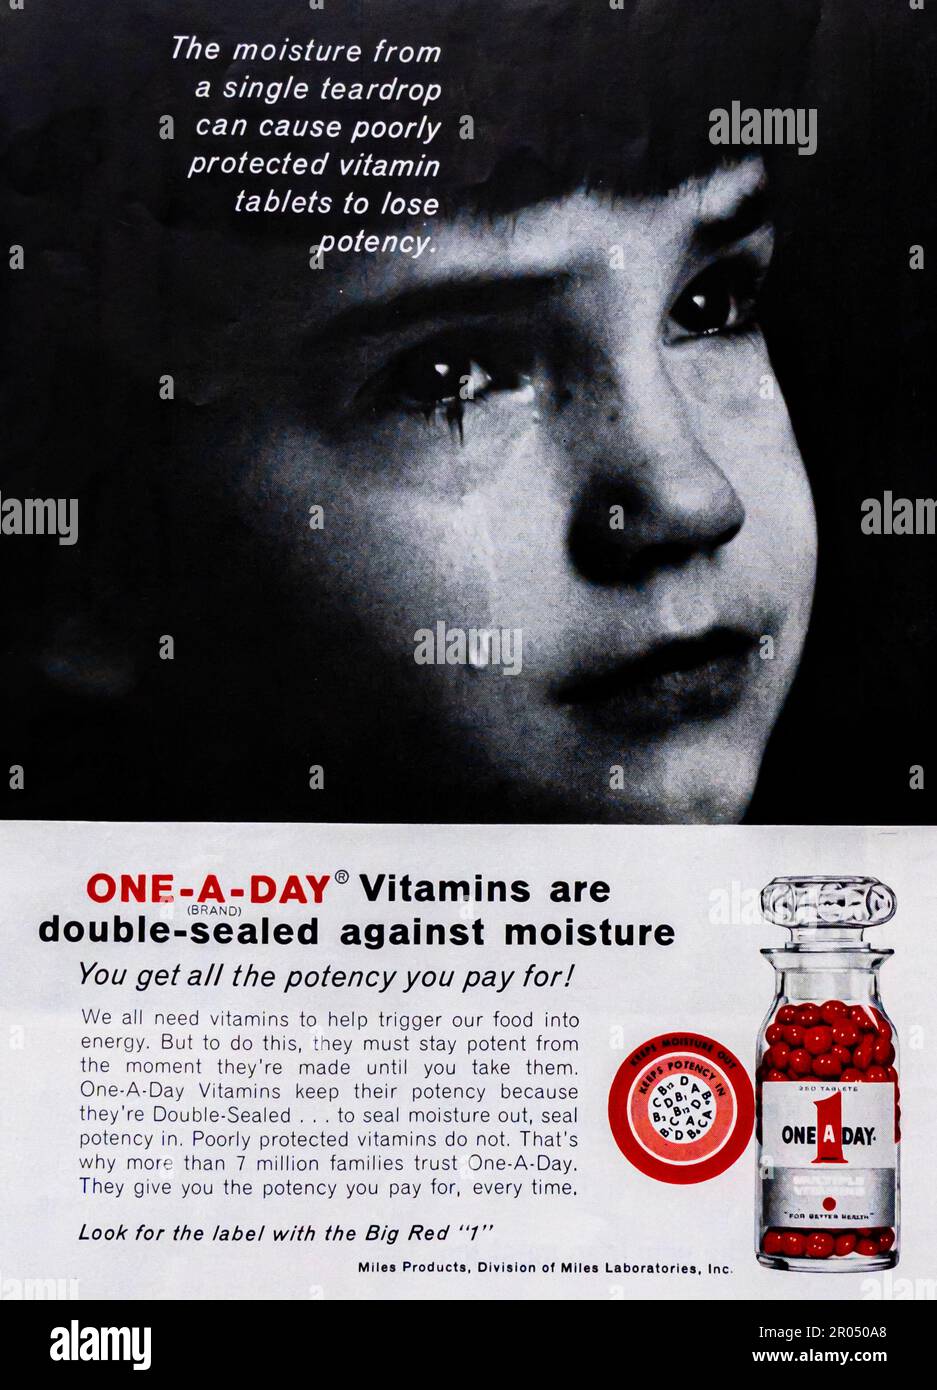 One-A-Day, Big Red 1 Vitamine produziert von der Miles Products Werbung in einem Journal Magazin, 1965 Stockfoto